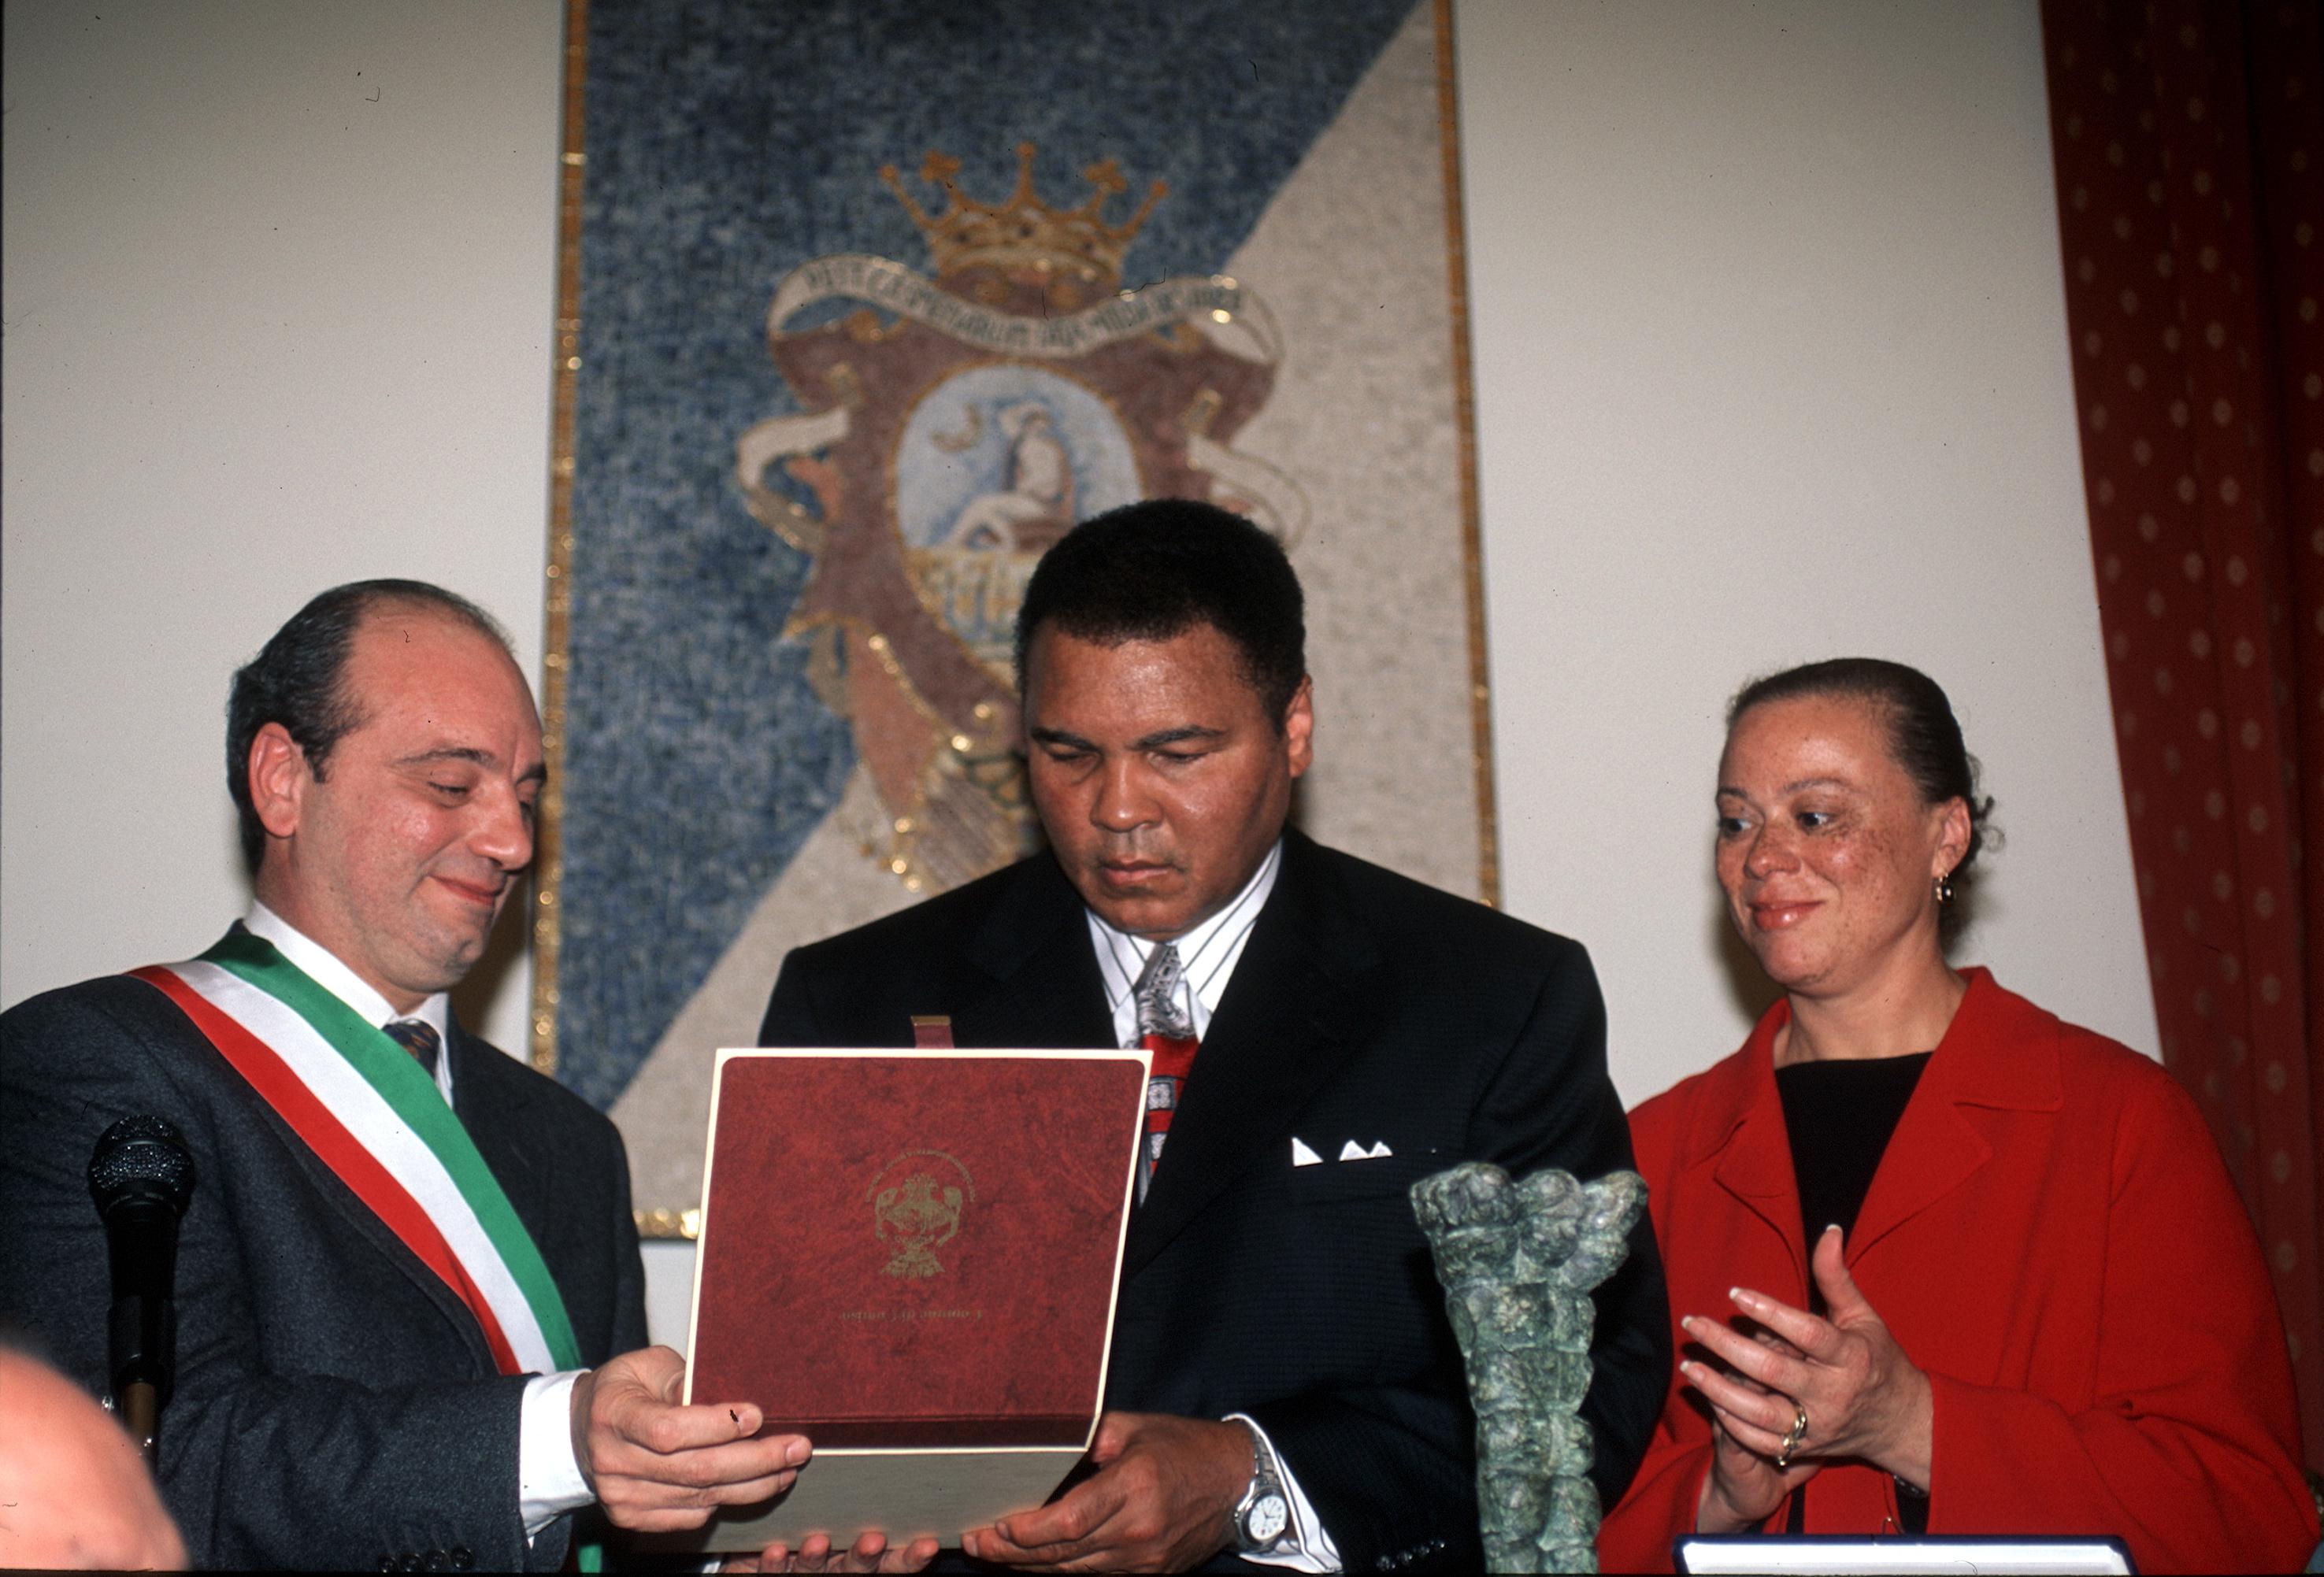 Muhammad Ali in visita a Comiso per ricevere la cittadinanza onoraria (Fotogramma)